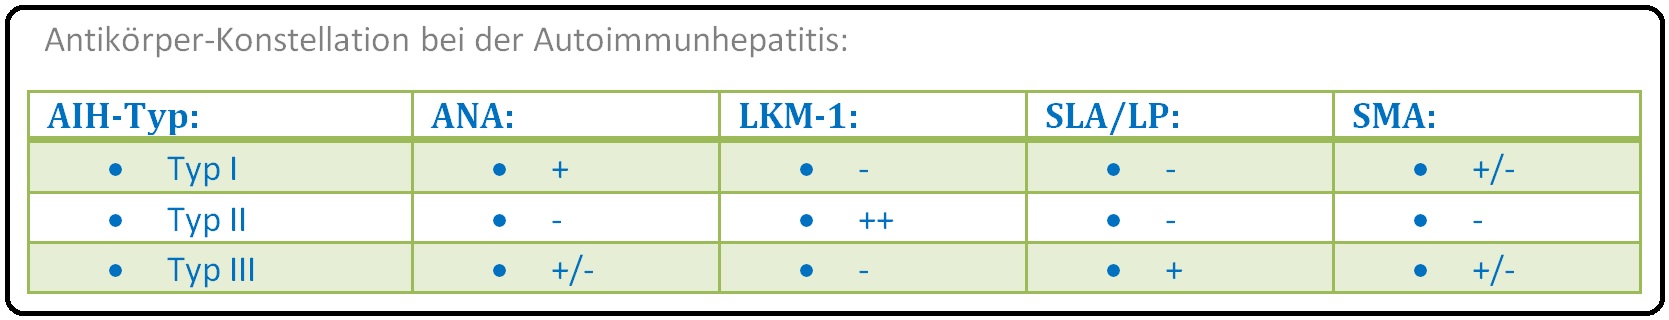 658 Antikörper Konstellation bei der Autoimmunhepatitis